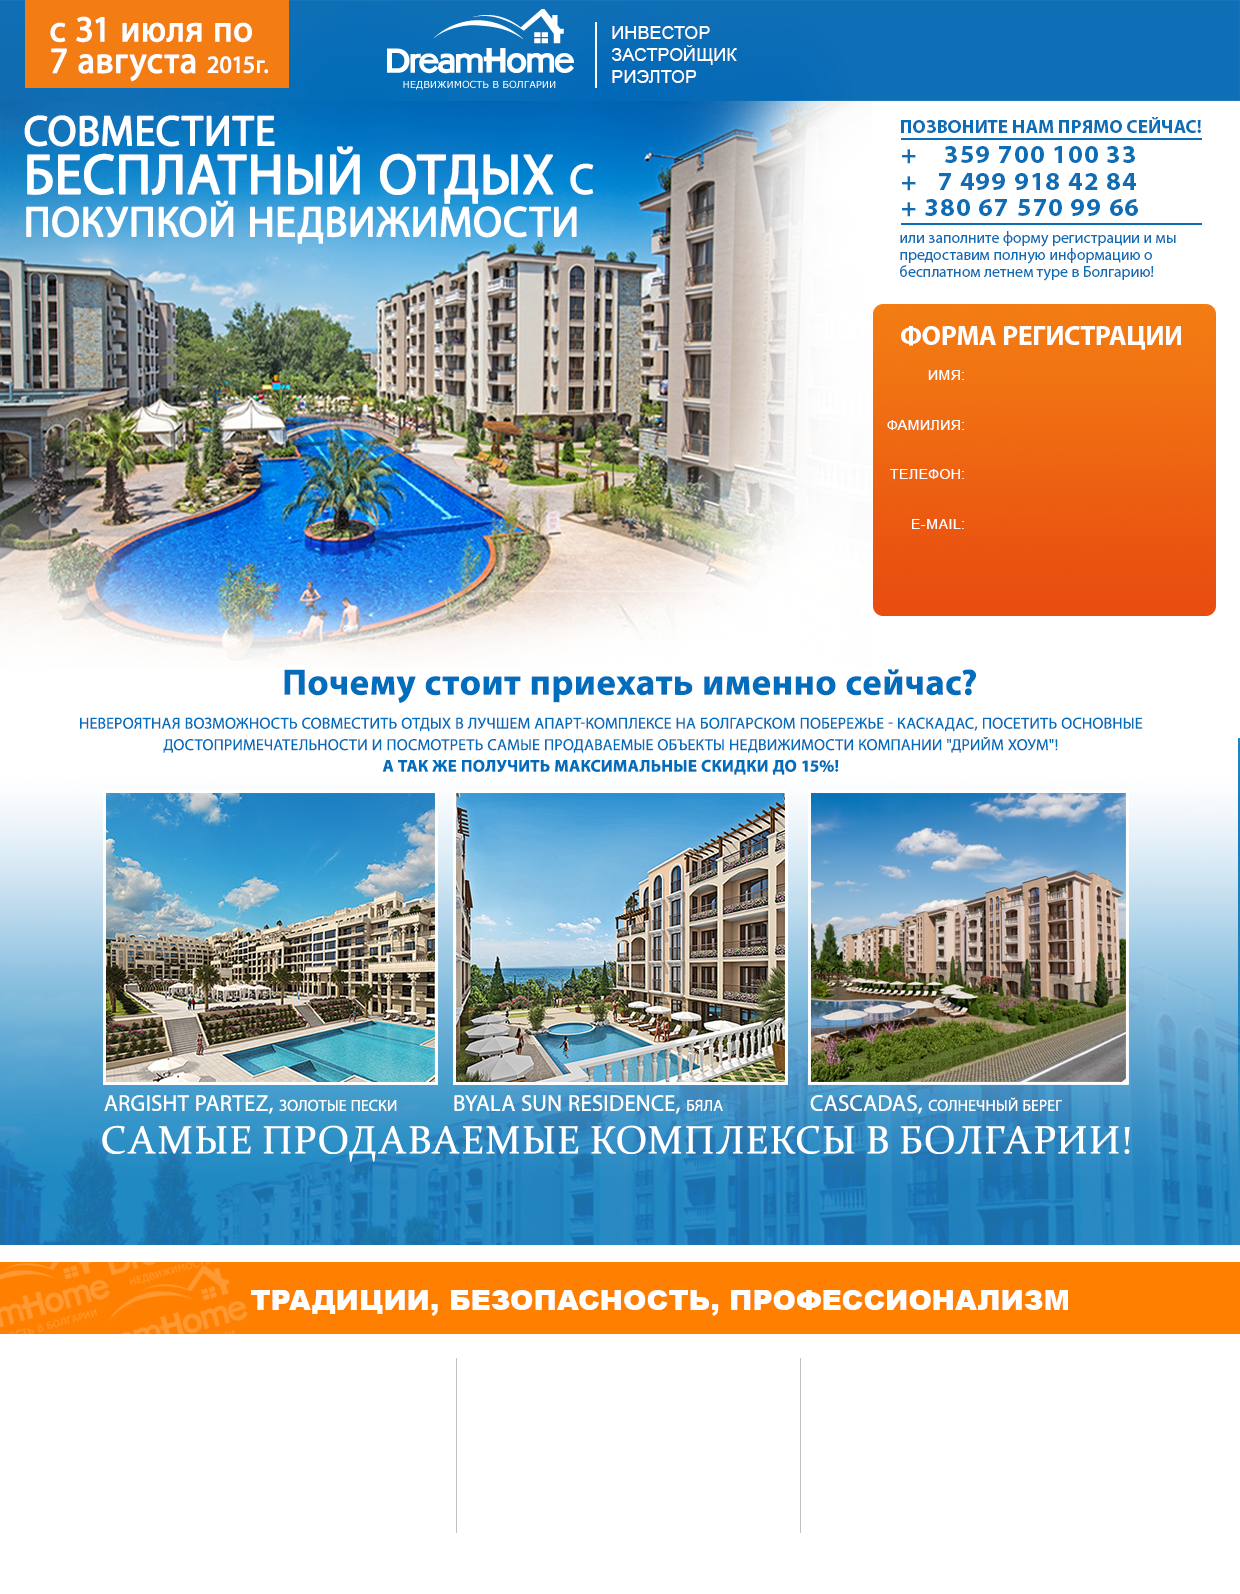 Недвижимость и квартиры в Болгарии